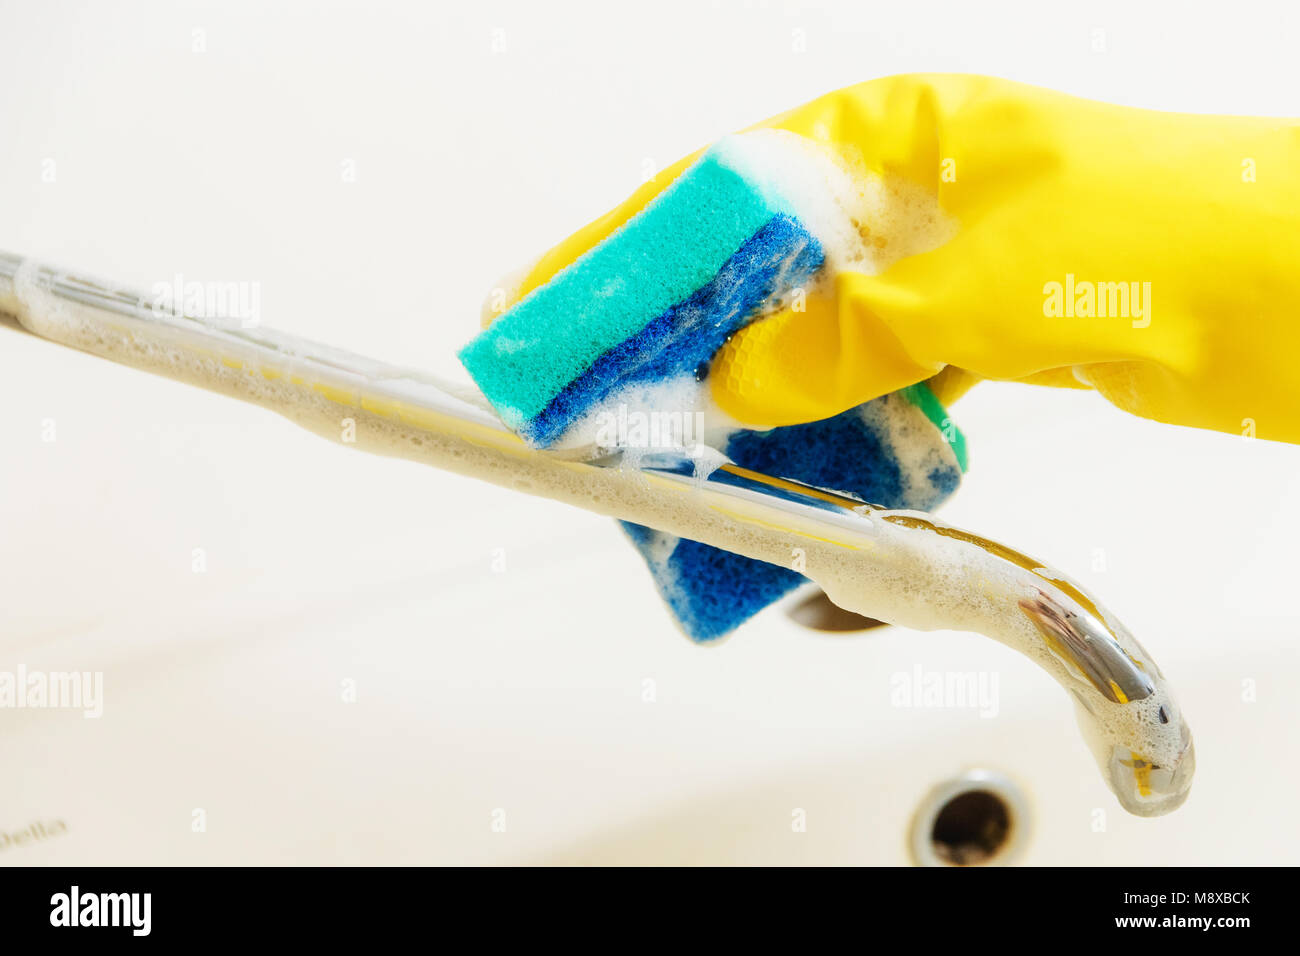 Le robinet de salle de nettoyage avec un détergent en jaune avec des gants en caoutchouc éponge Bleu - le ménage, le nettoyage de printemps Concept Banque D'Images